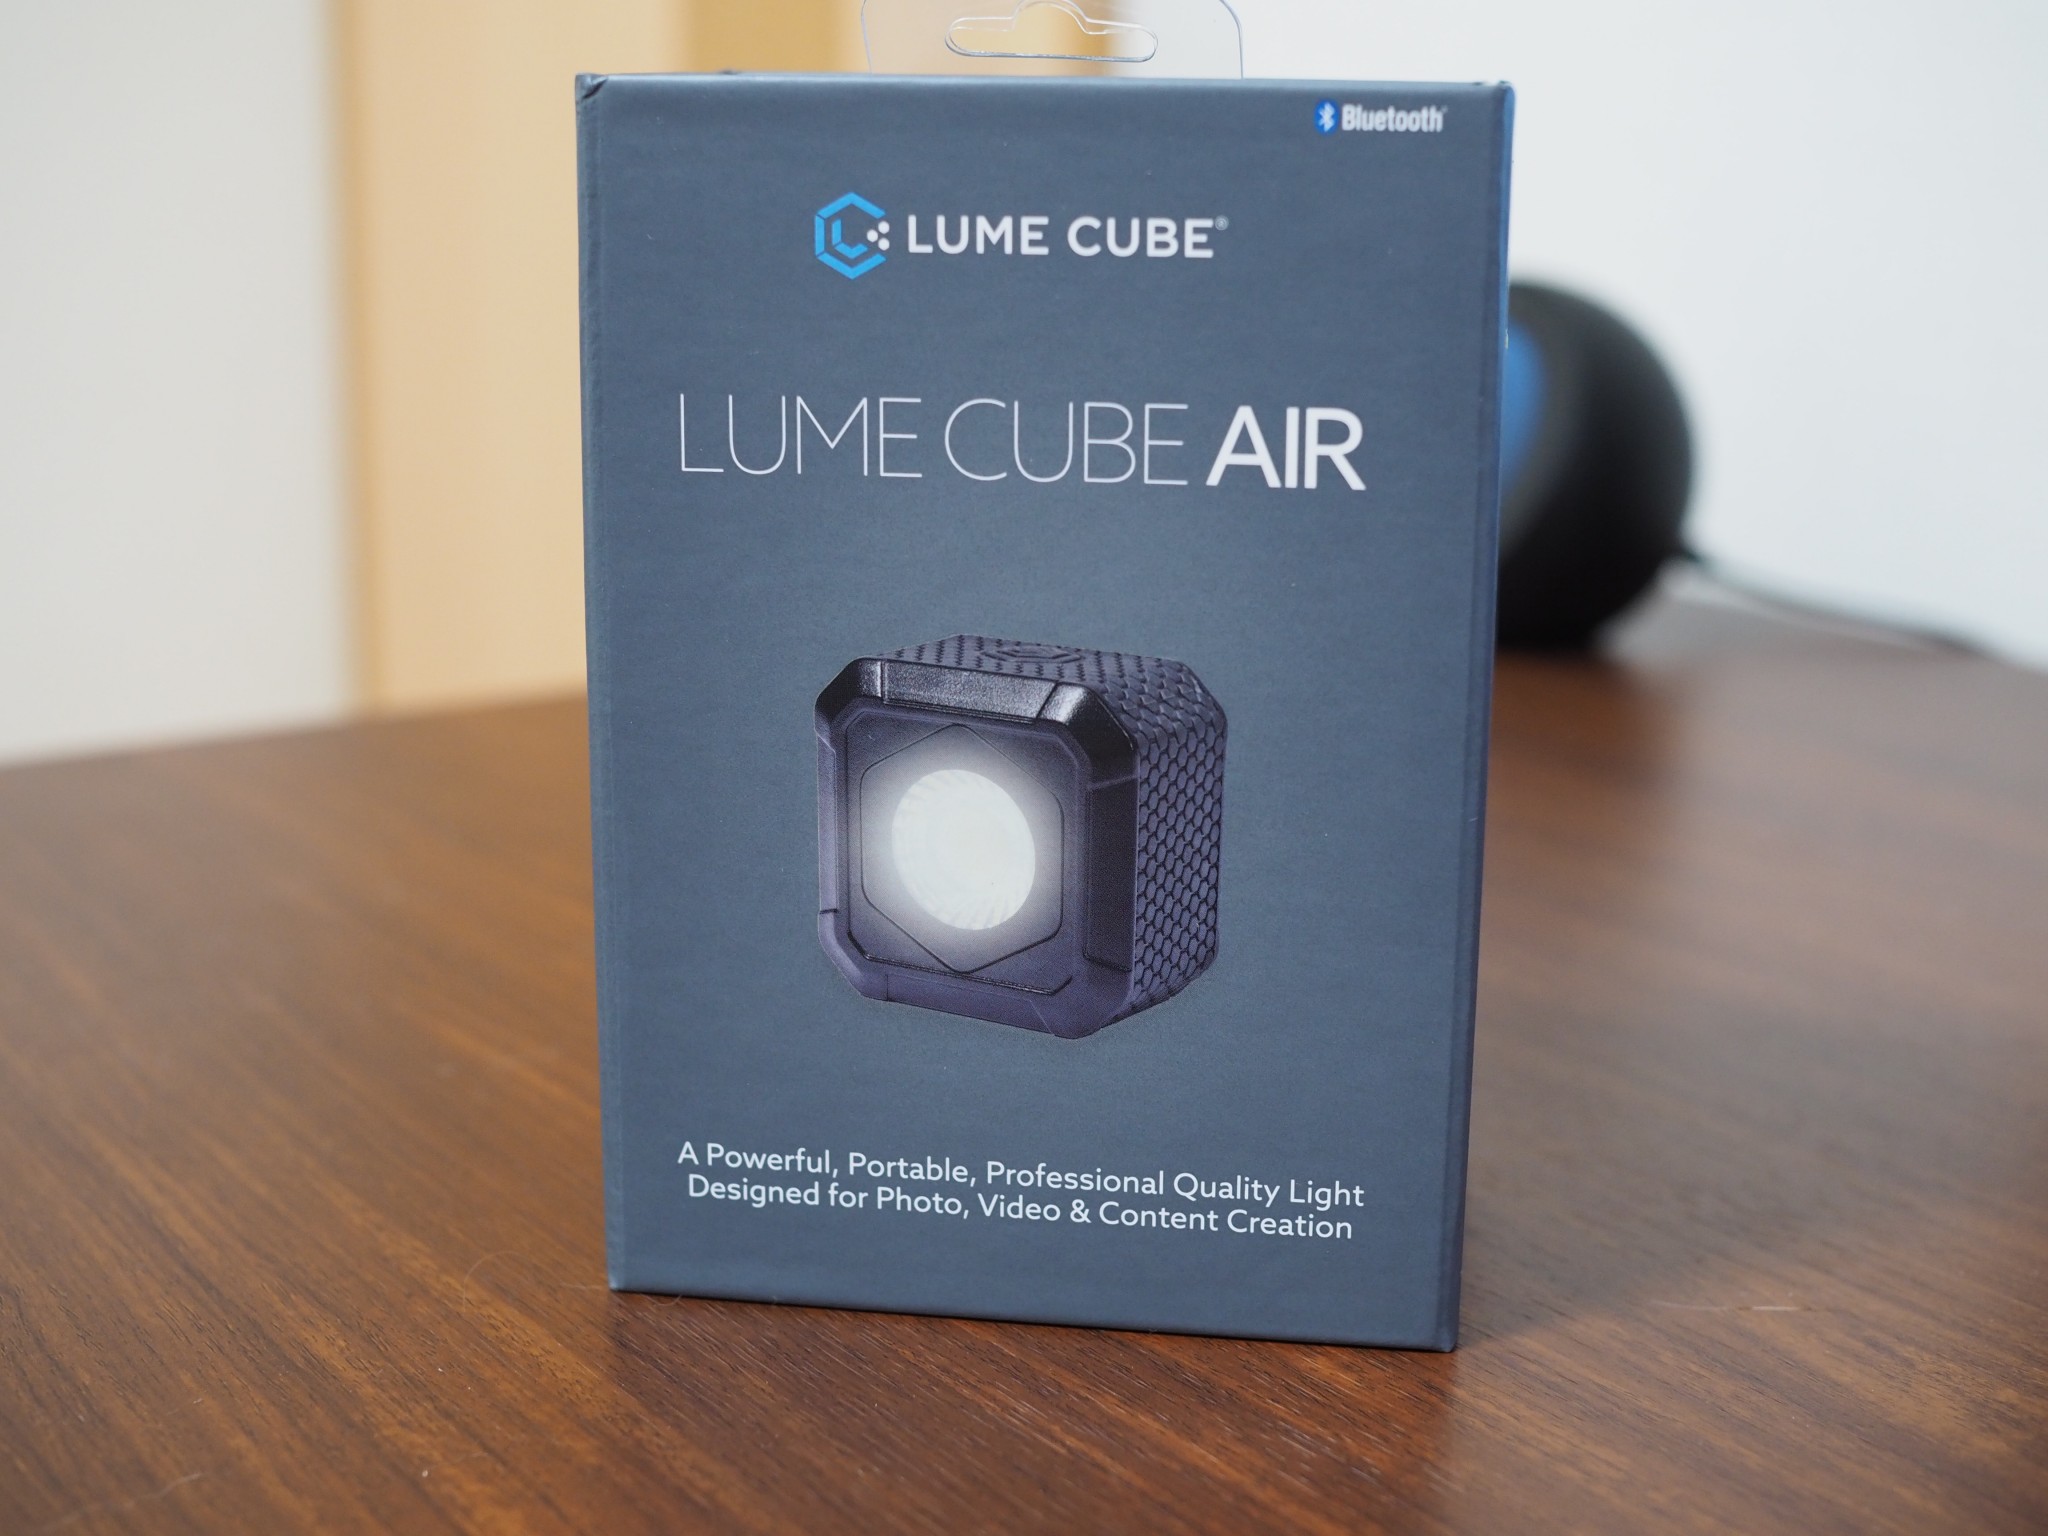 スマホから操作できるLEDライト「LUME CUBE AIR」、補助光としては便利そう Dream Seed.